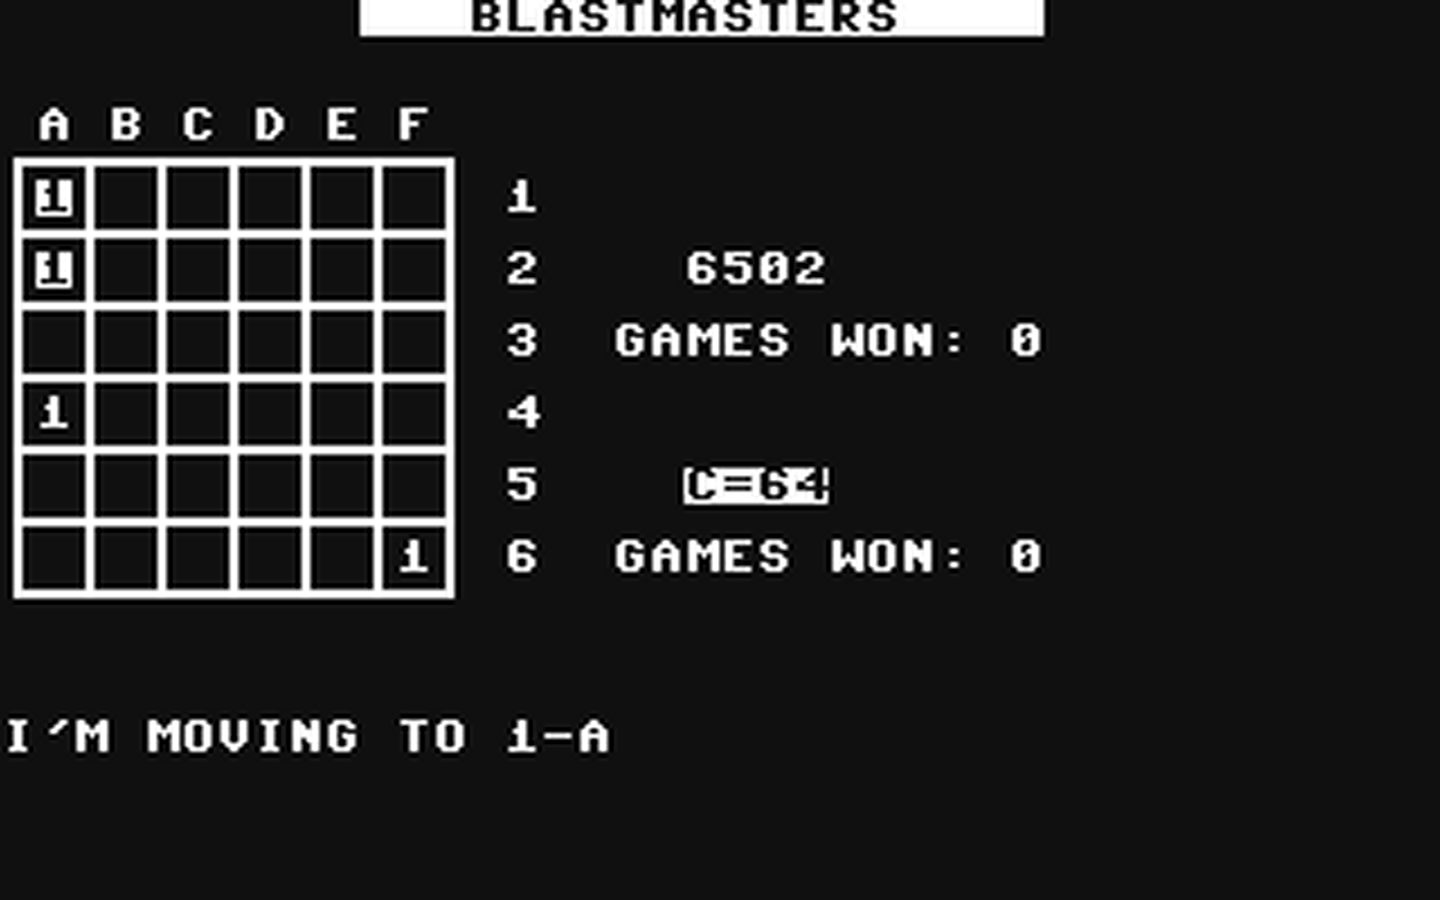 C64 GameBase Blastmasters (Not_Published) 2017